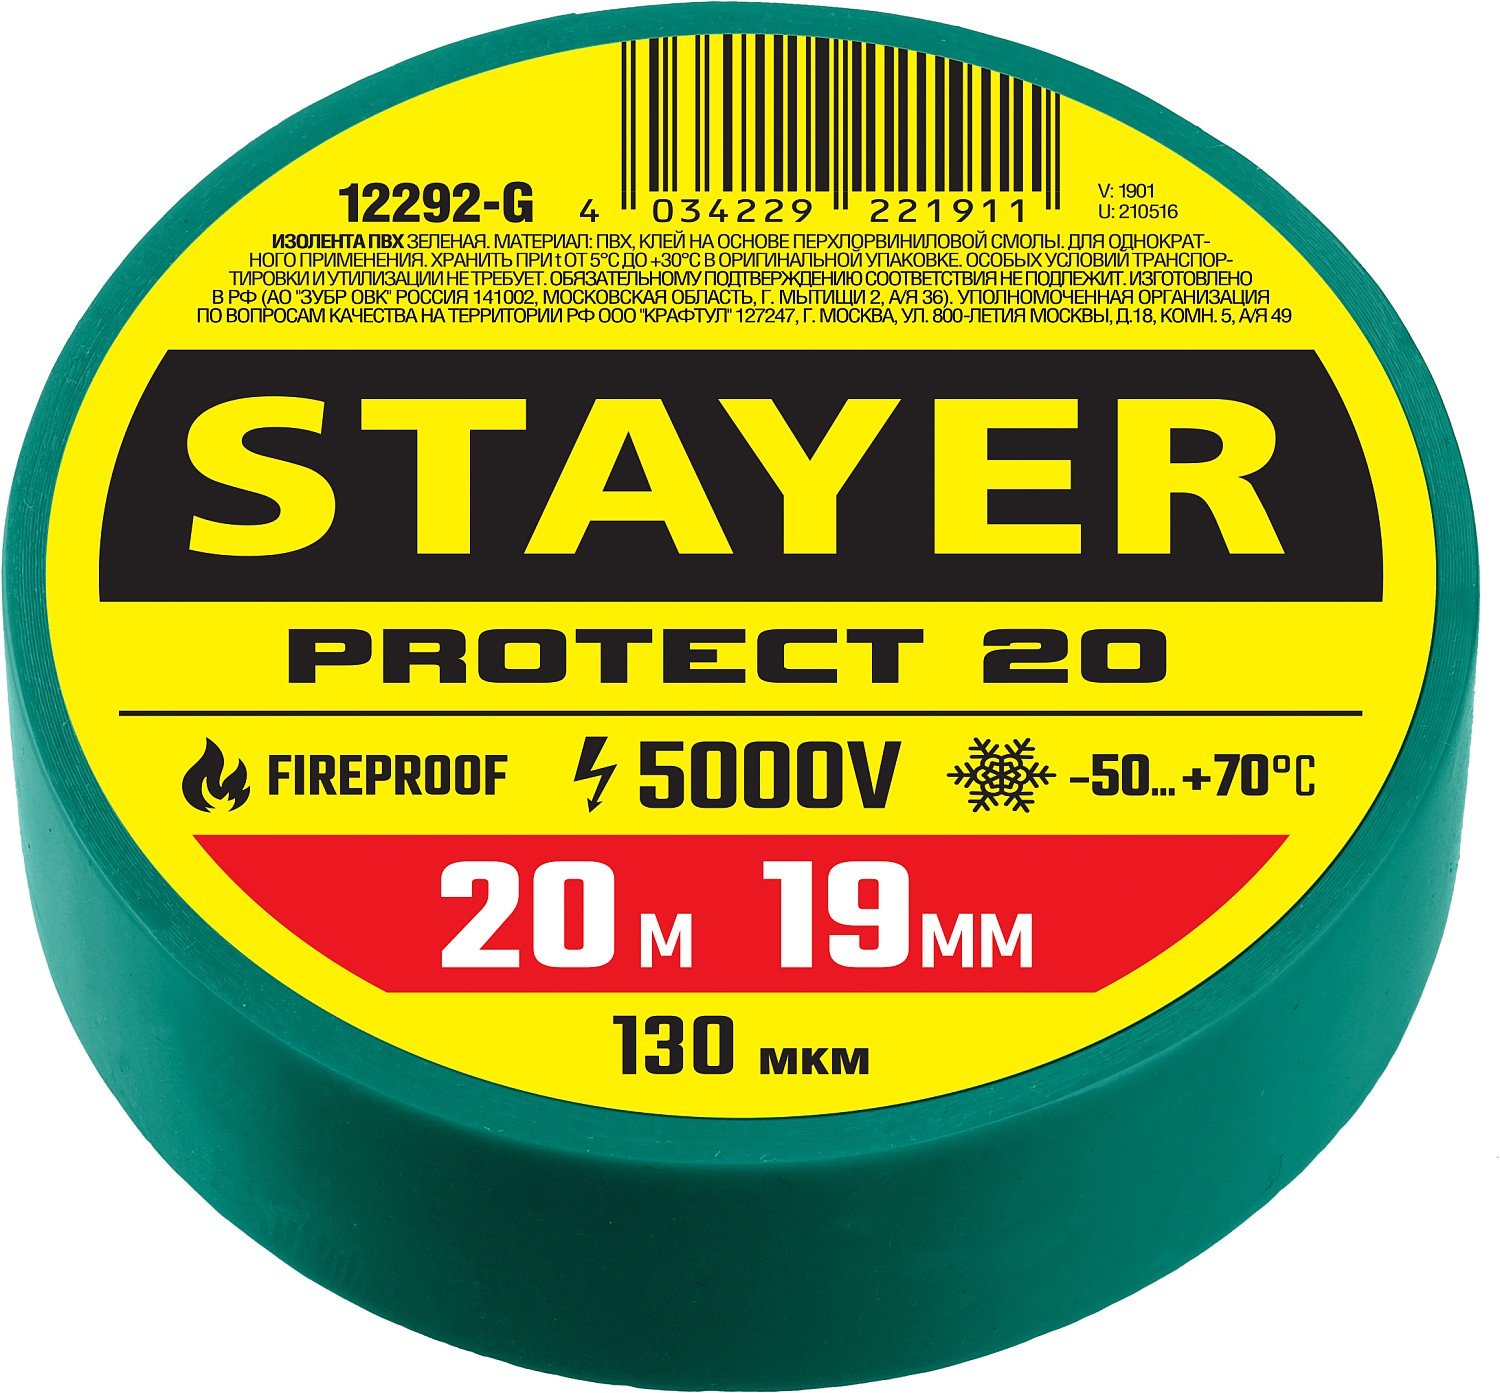 Изоляционная лента пвх STAYER Protect-20 19 мм х 20 м зеленая (12292-G)